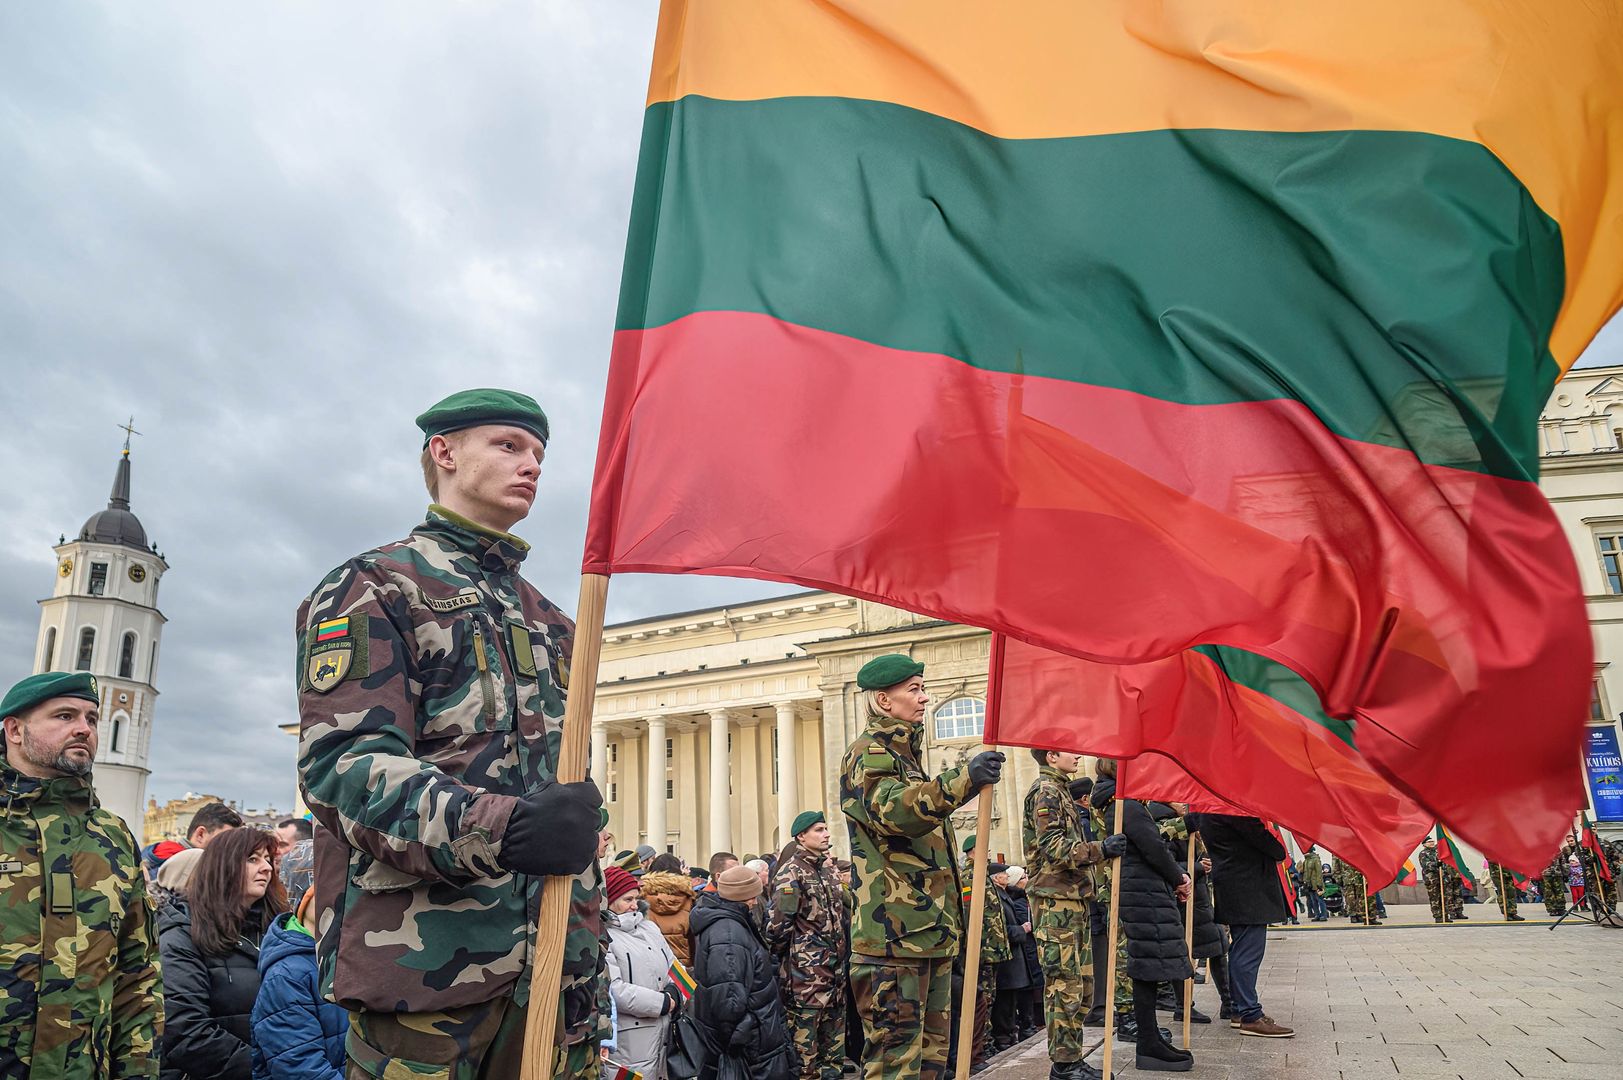 Litwini biorą Białorusinów pod lupę. Powodem obawy o "bezpieczeństwo narodowe"